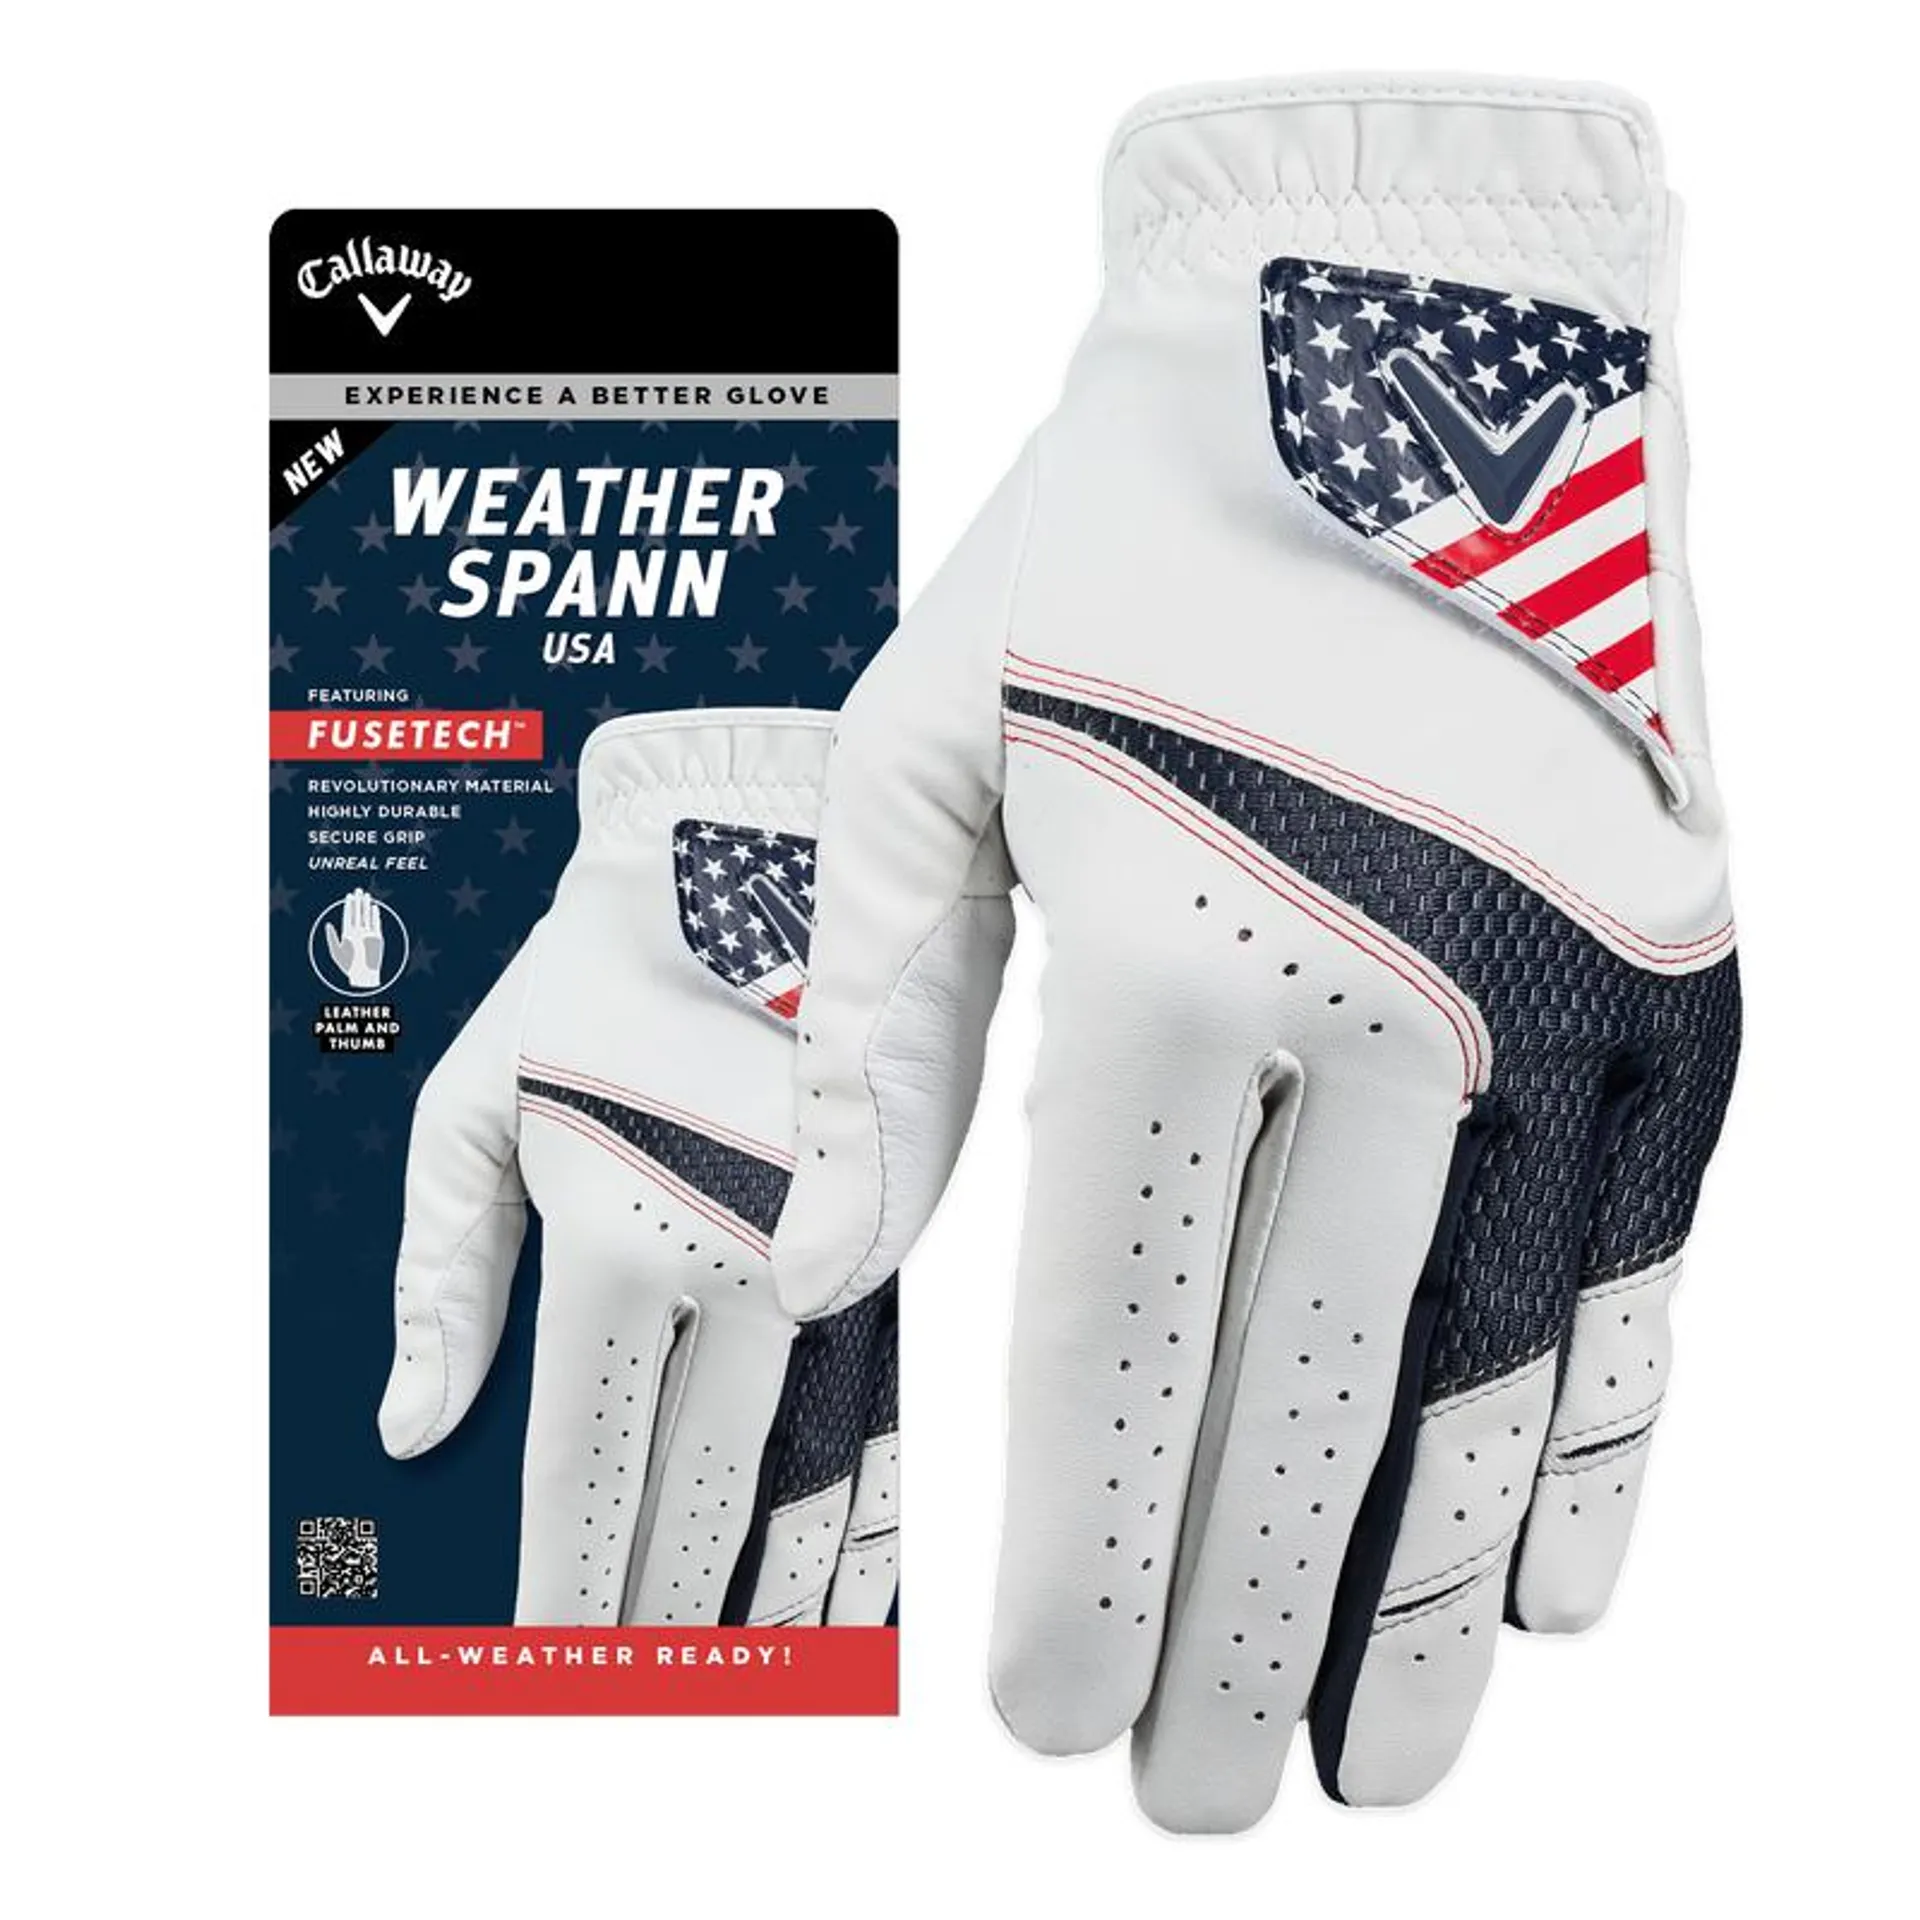 Weather Spann USA Golf Glove